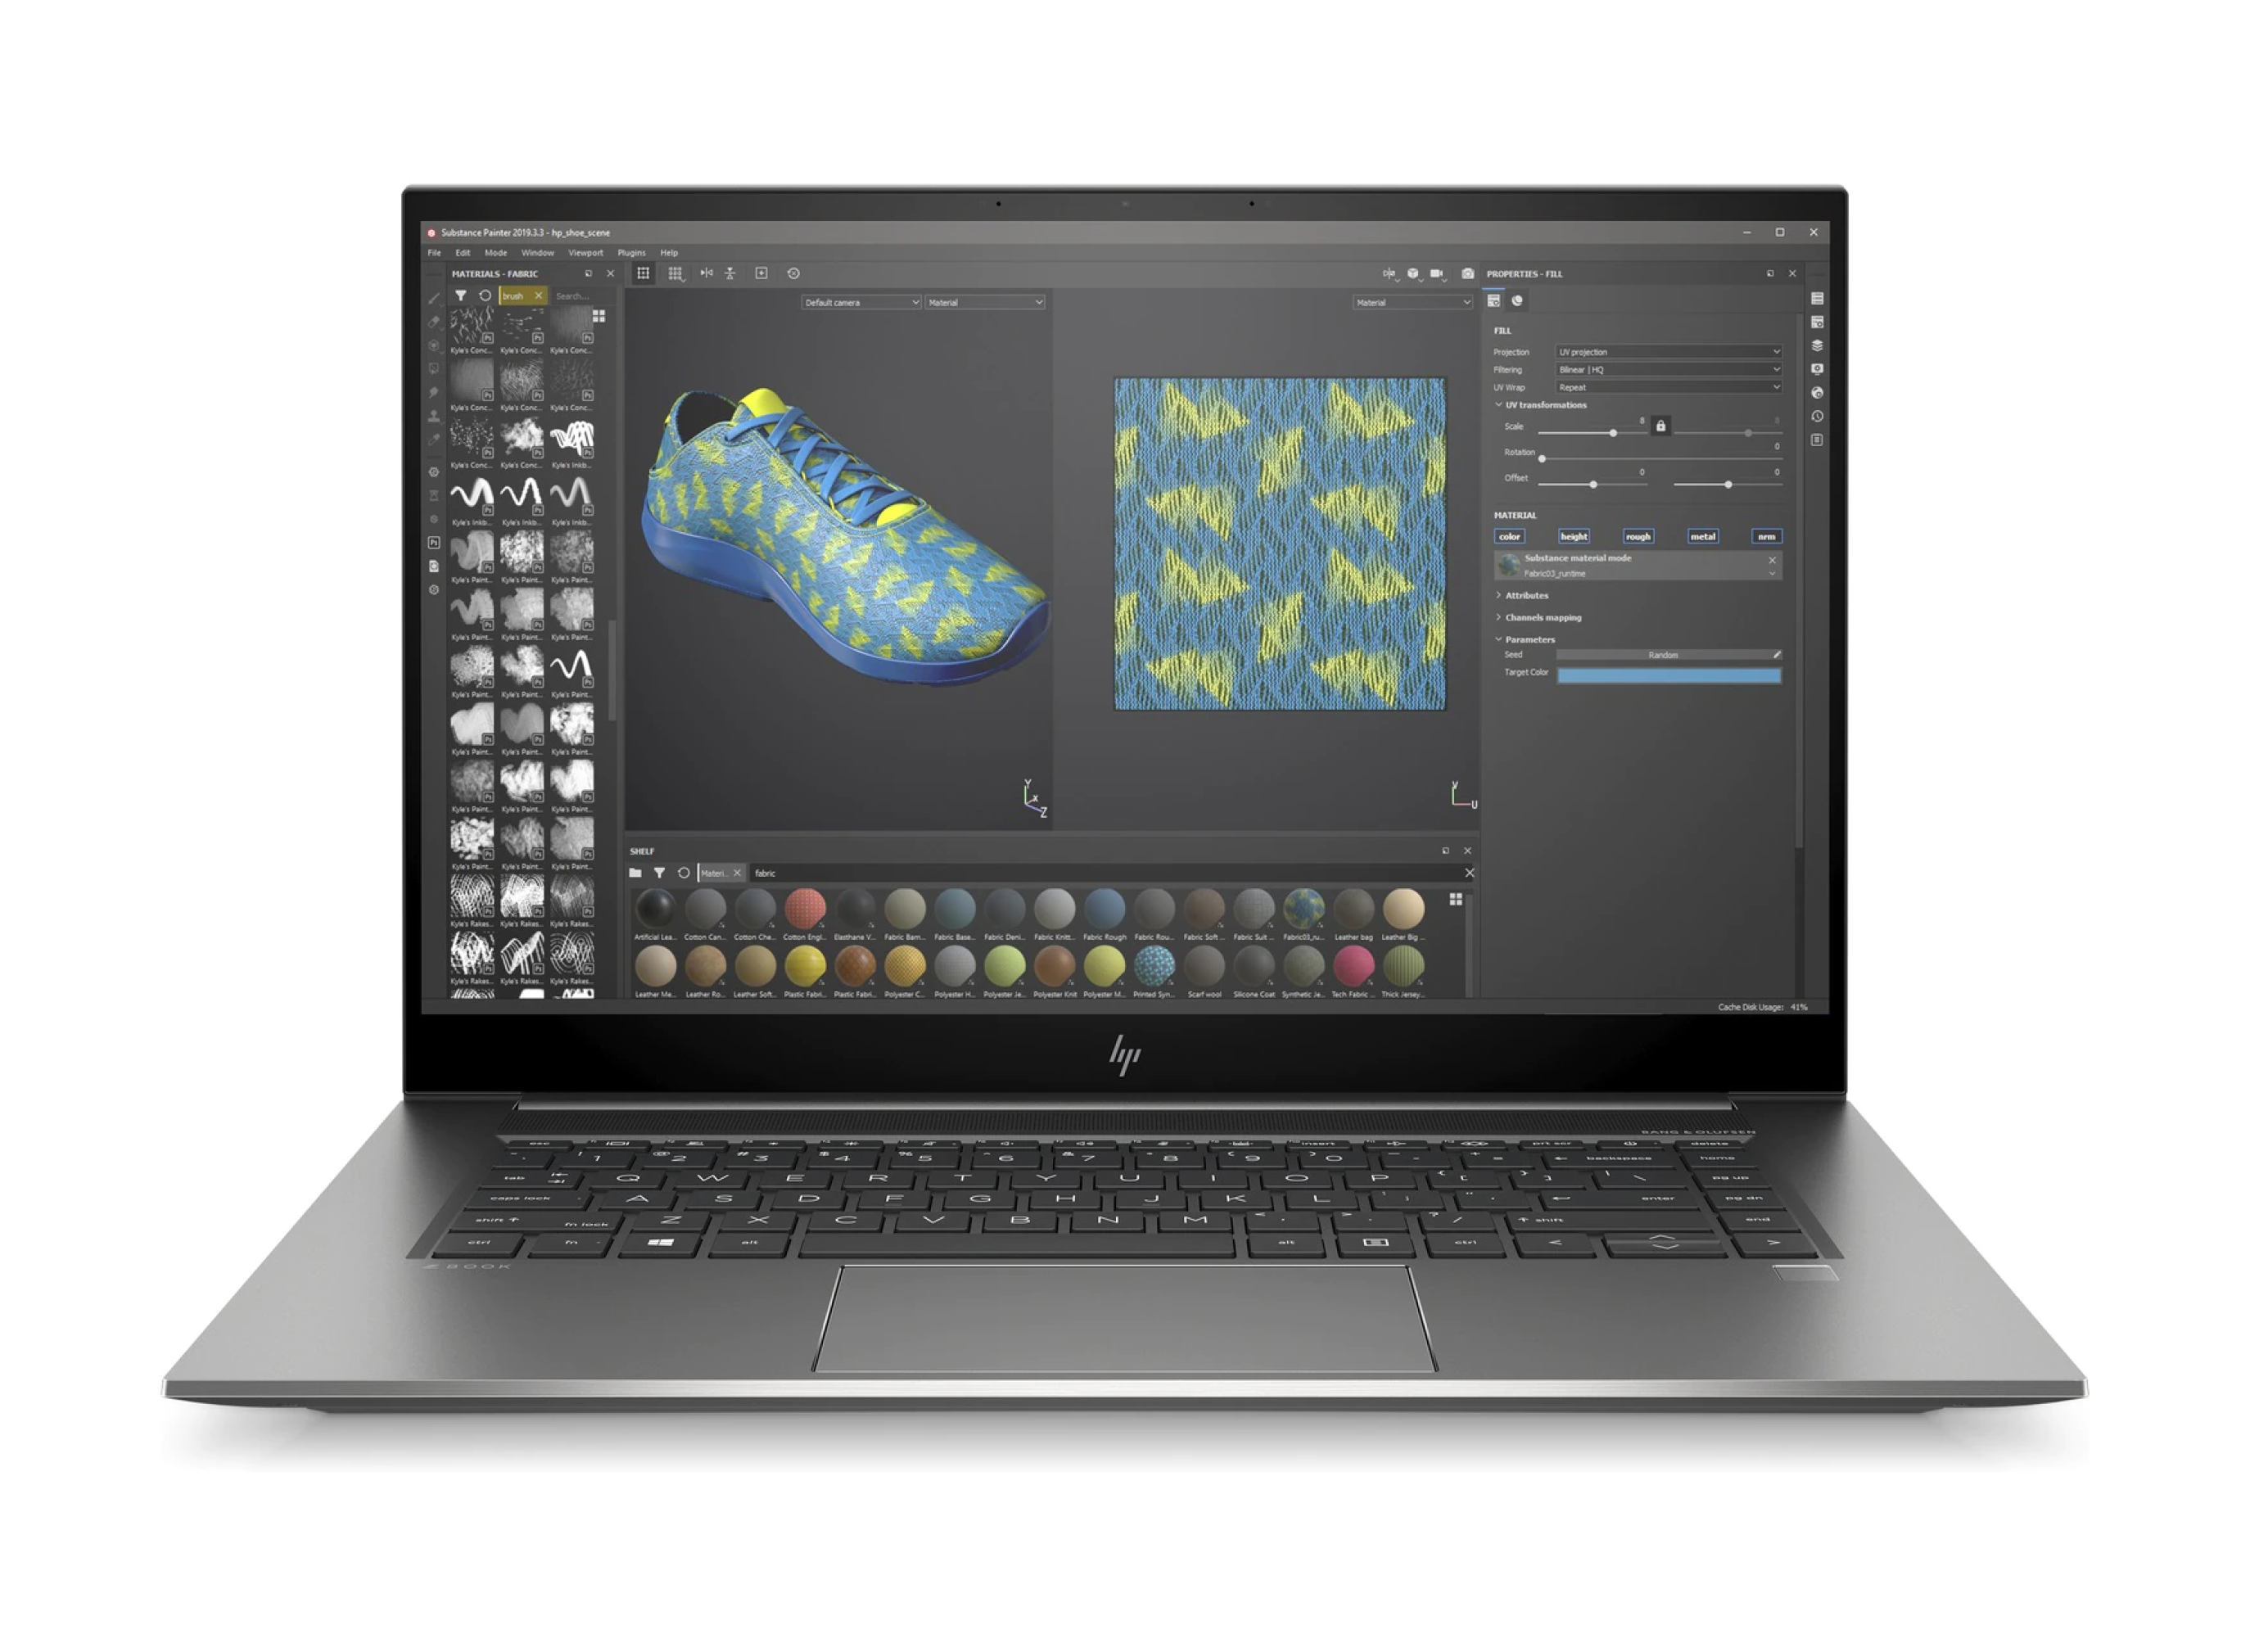  خرید لپ تاپ HP ZBook G7 Studio با گرافیک 8 گیگابایت RTX 2070 | لاکچری لپ تاپ 